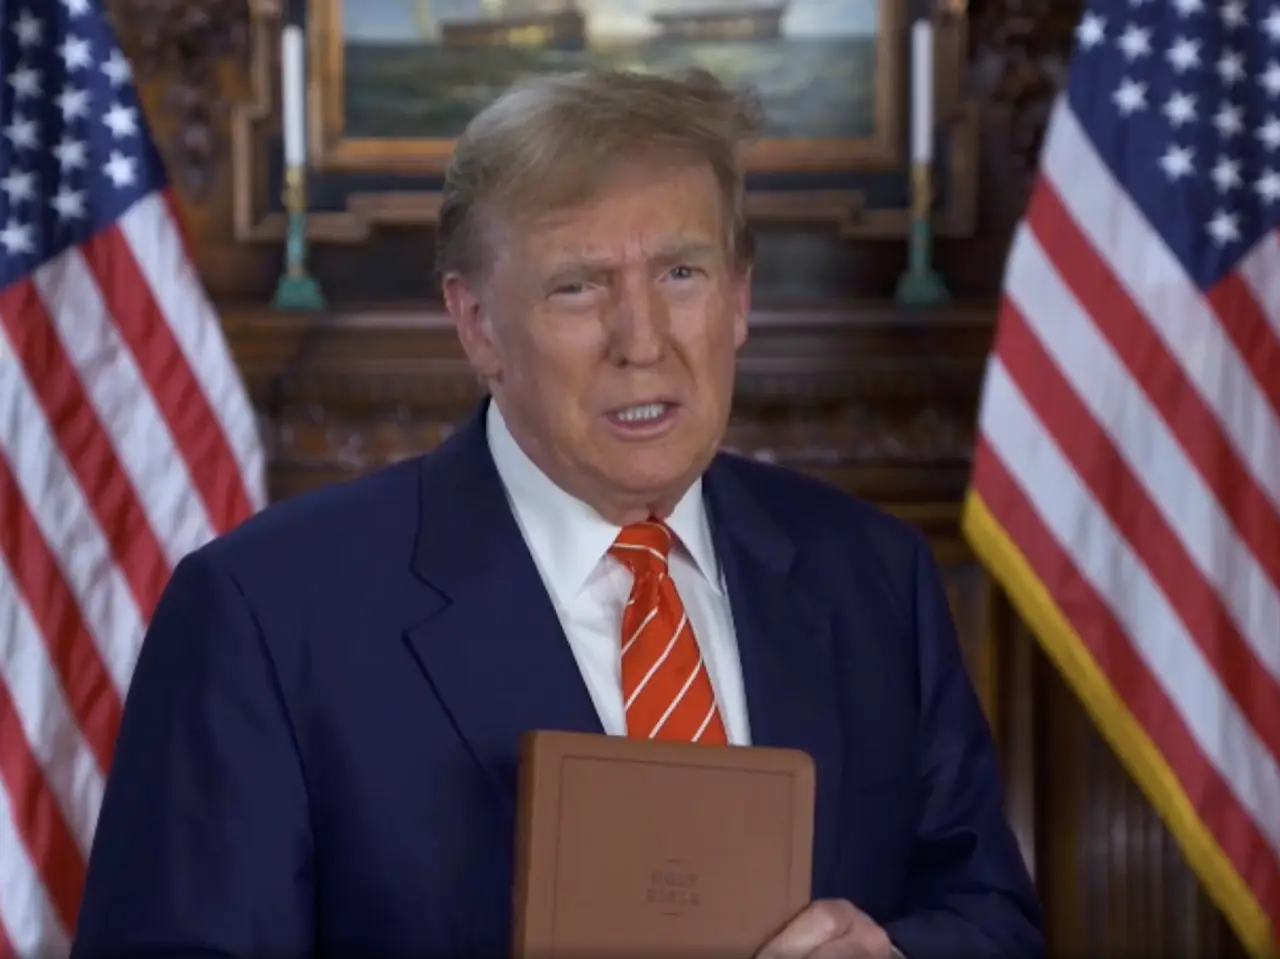 Durante la Semana Santa, Trump venderá biblias para ‘sumar’ a su campaña de reelección